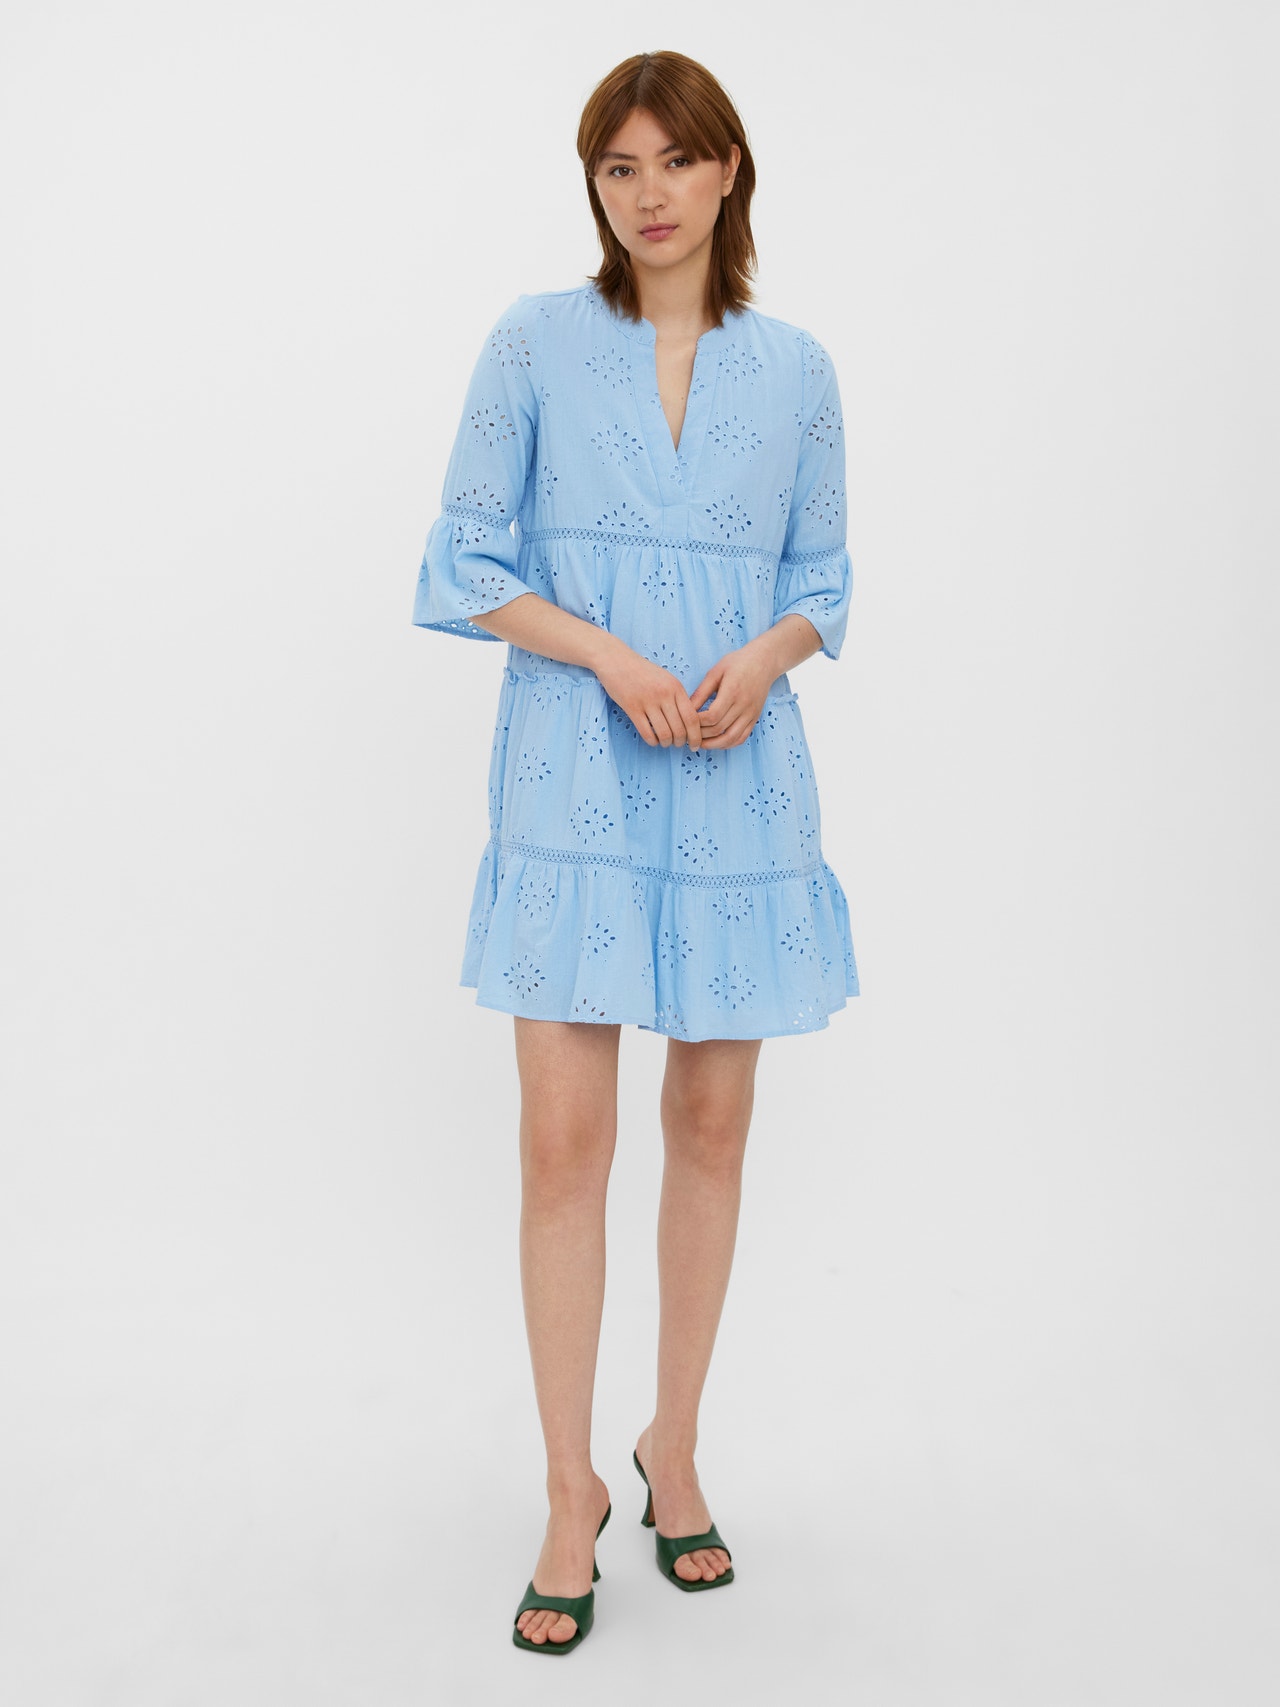 Vero Moda VMDICTHE Short dress -Blue Bell - 10250097